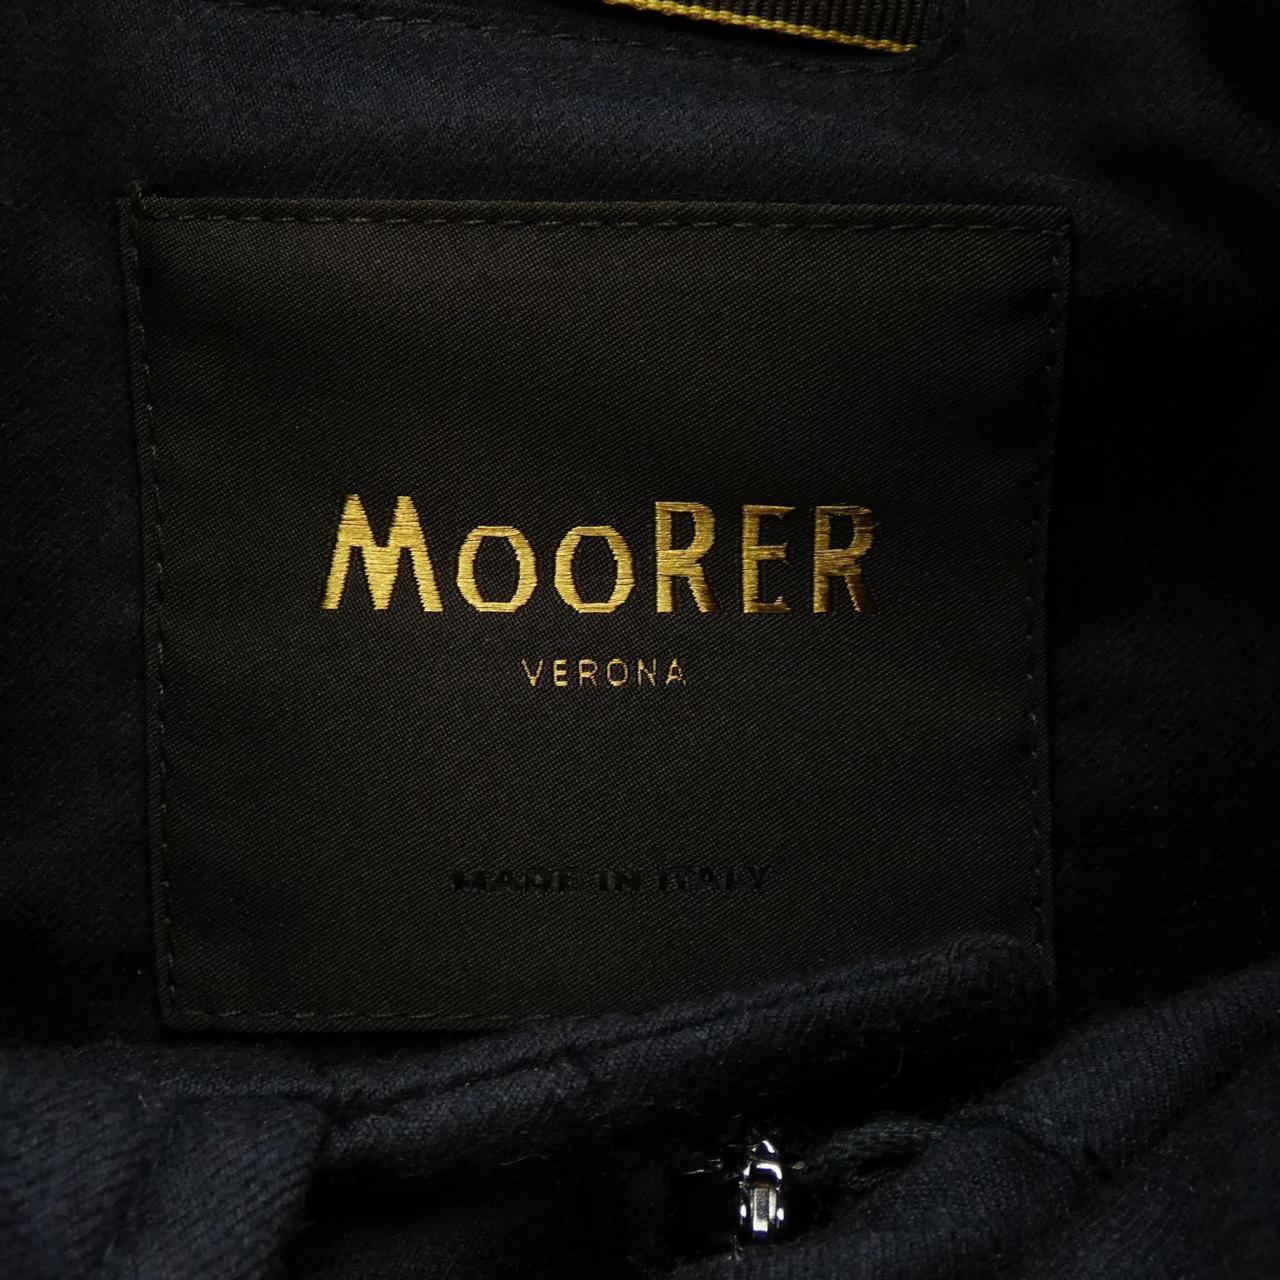 Mouret MOORER down jacket